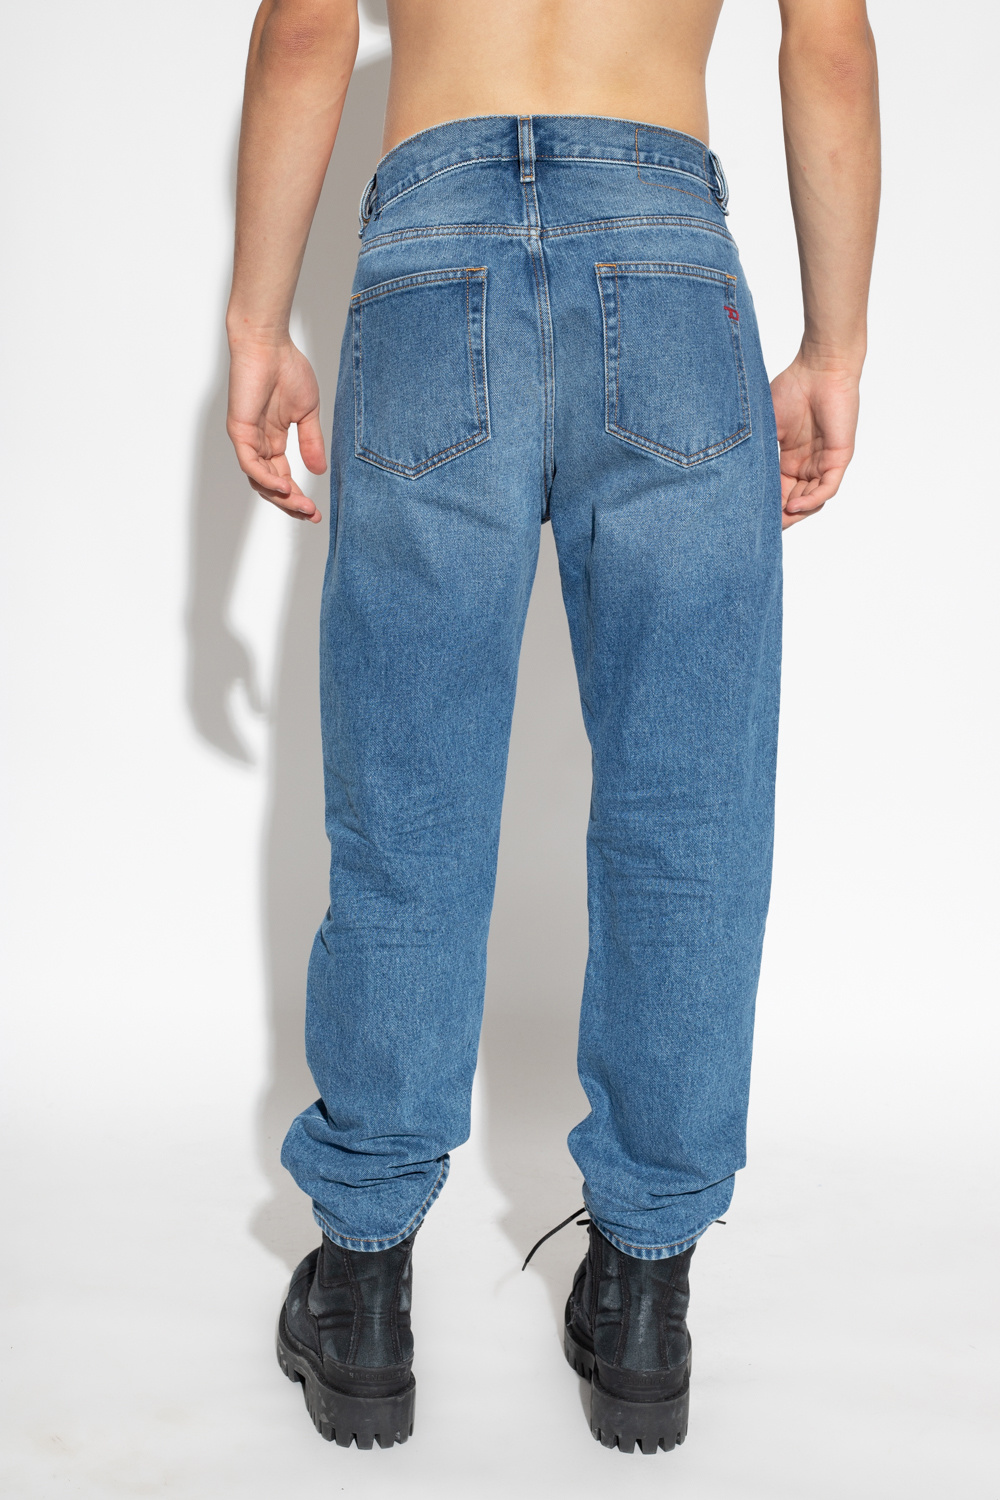 Viker' midi leg jeans Diesel - '2020 D - diesel sleenker mid rise skinny  jeans item - IetpShops GB